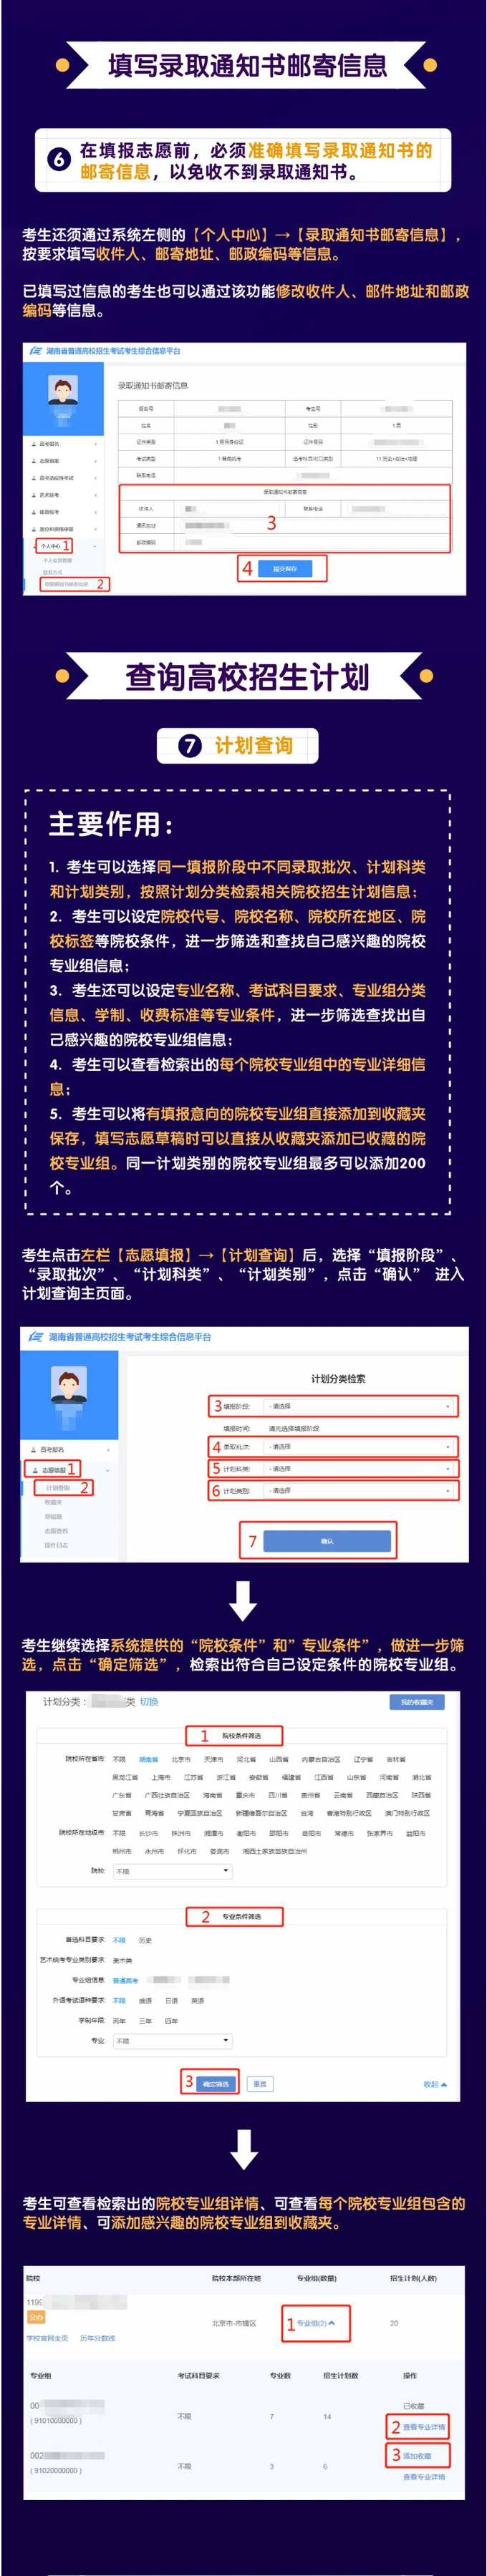 2022年湖南省高考志愿填报系统操作指南